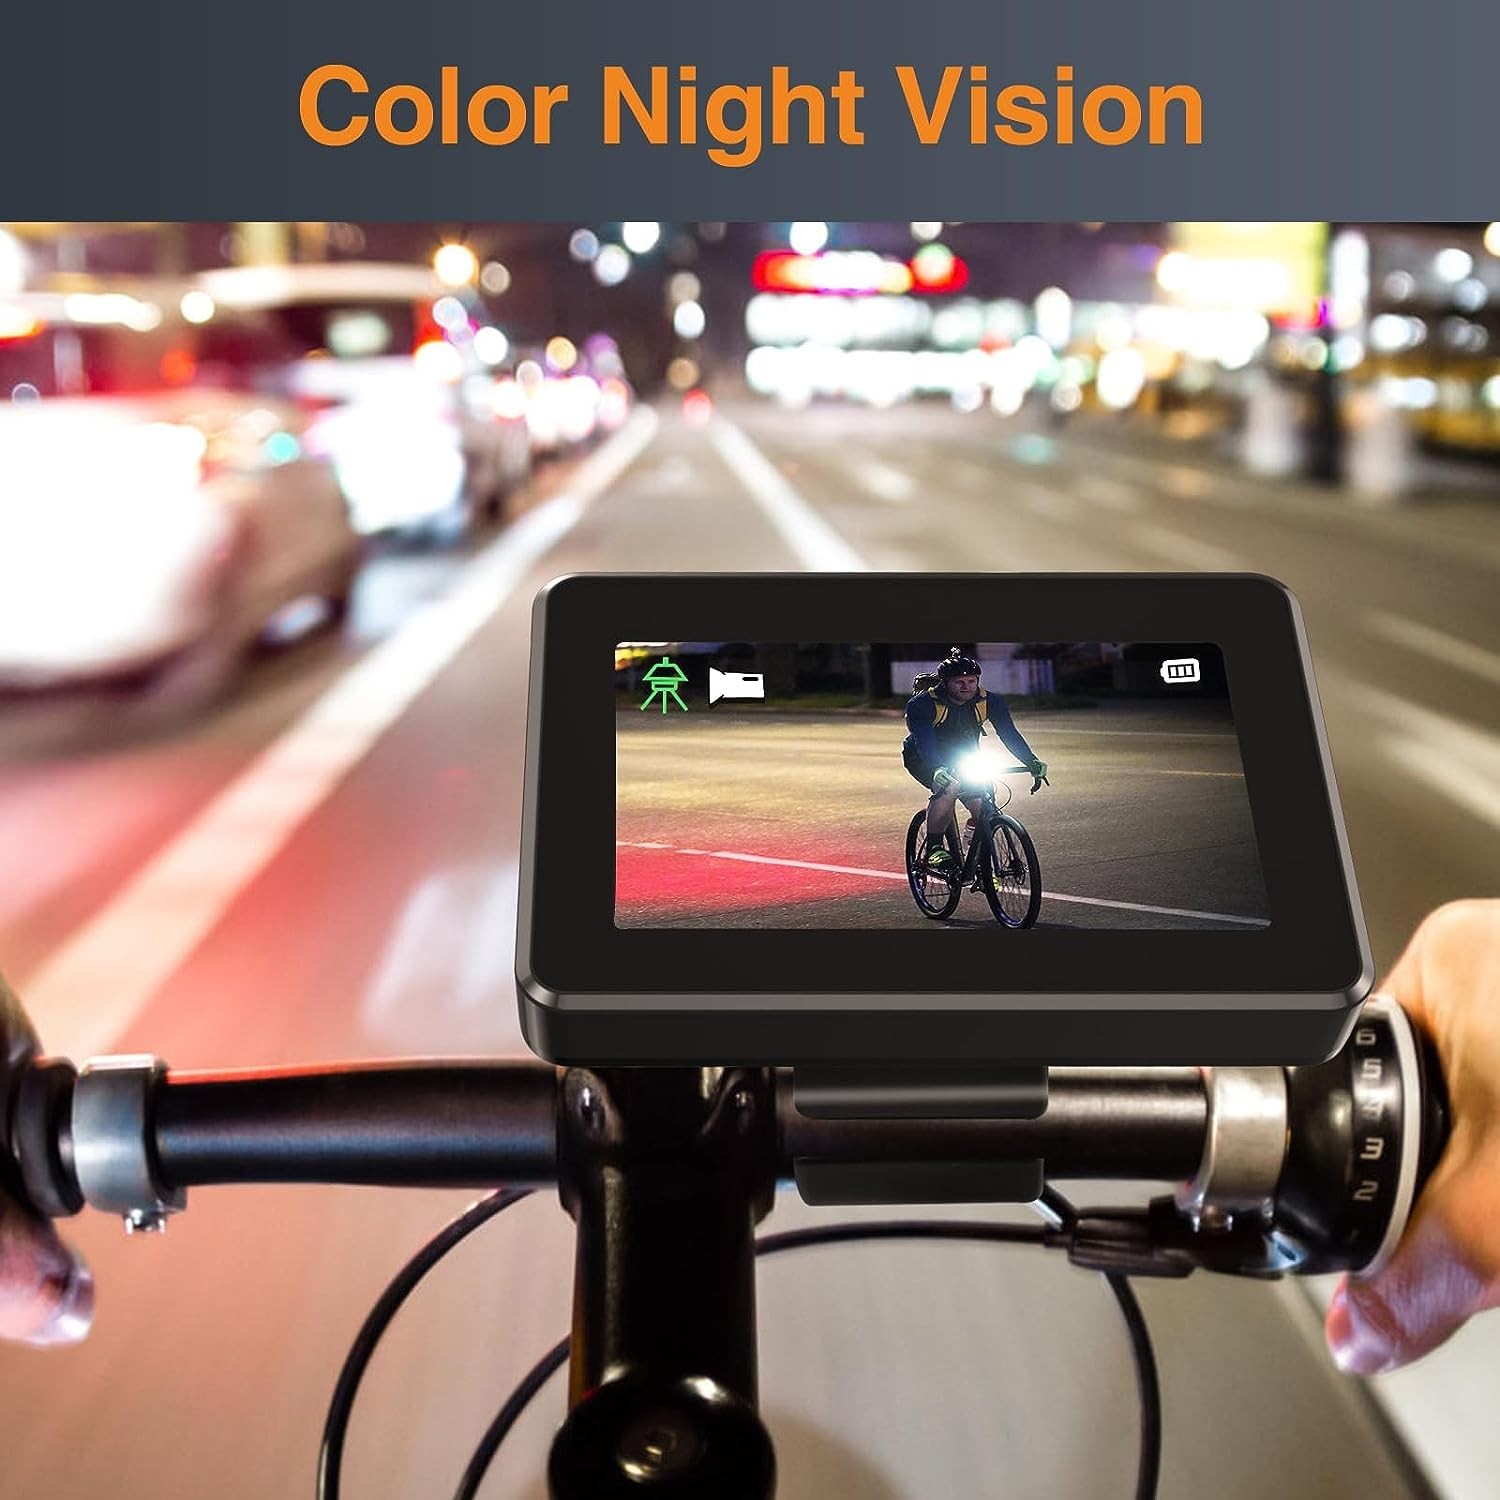 zadna kamera na bicykel s nocnym videnim